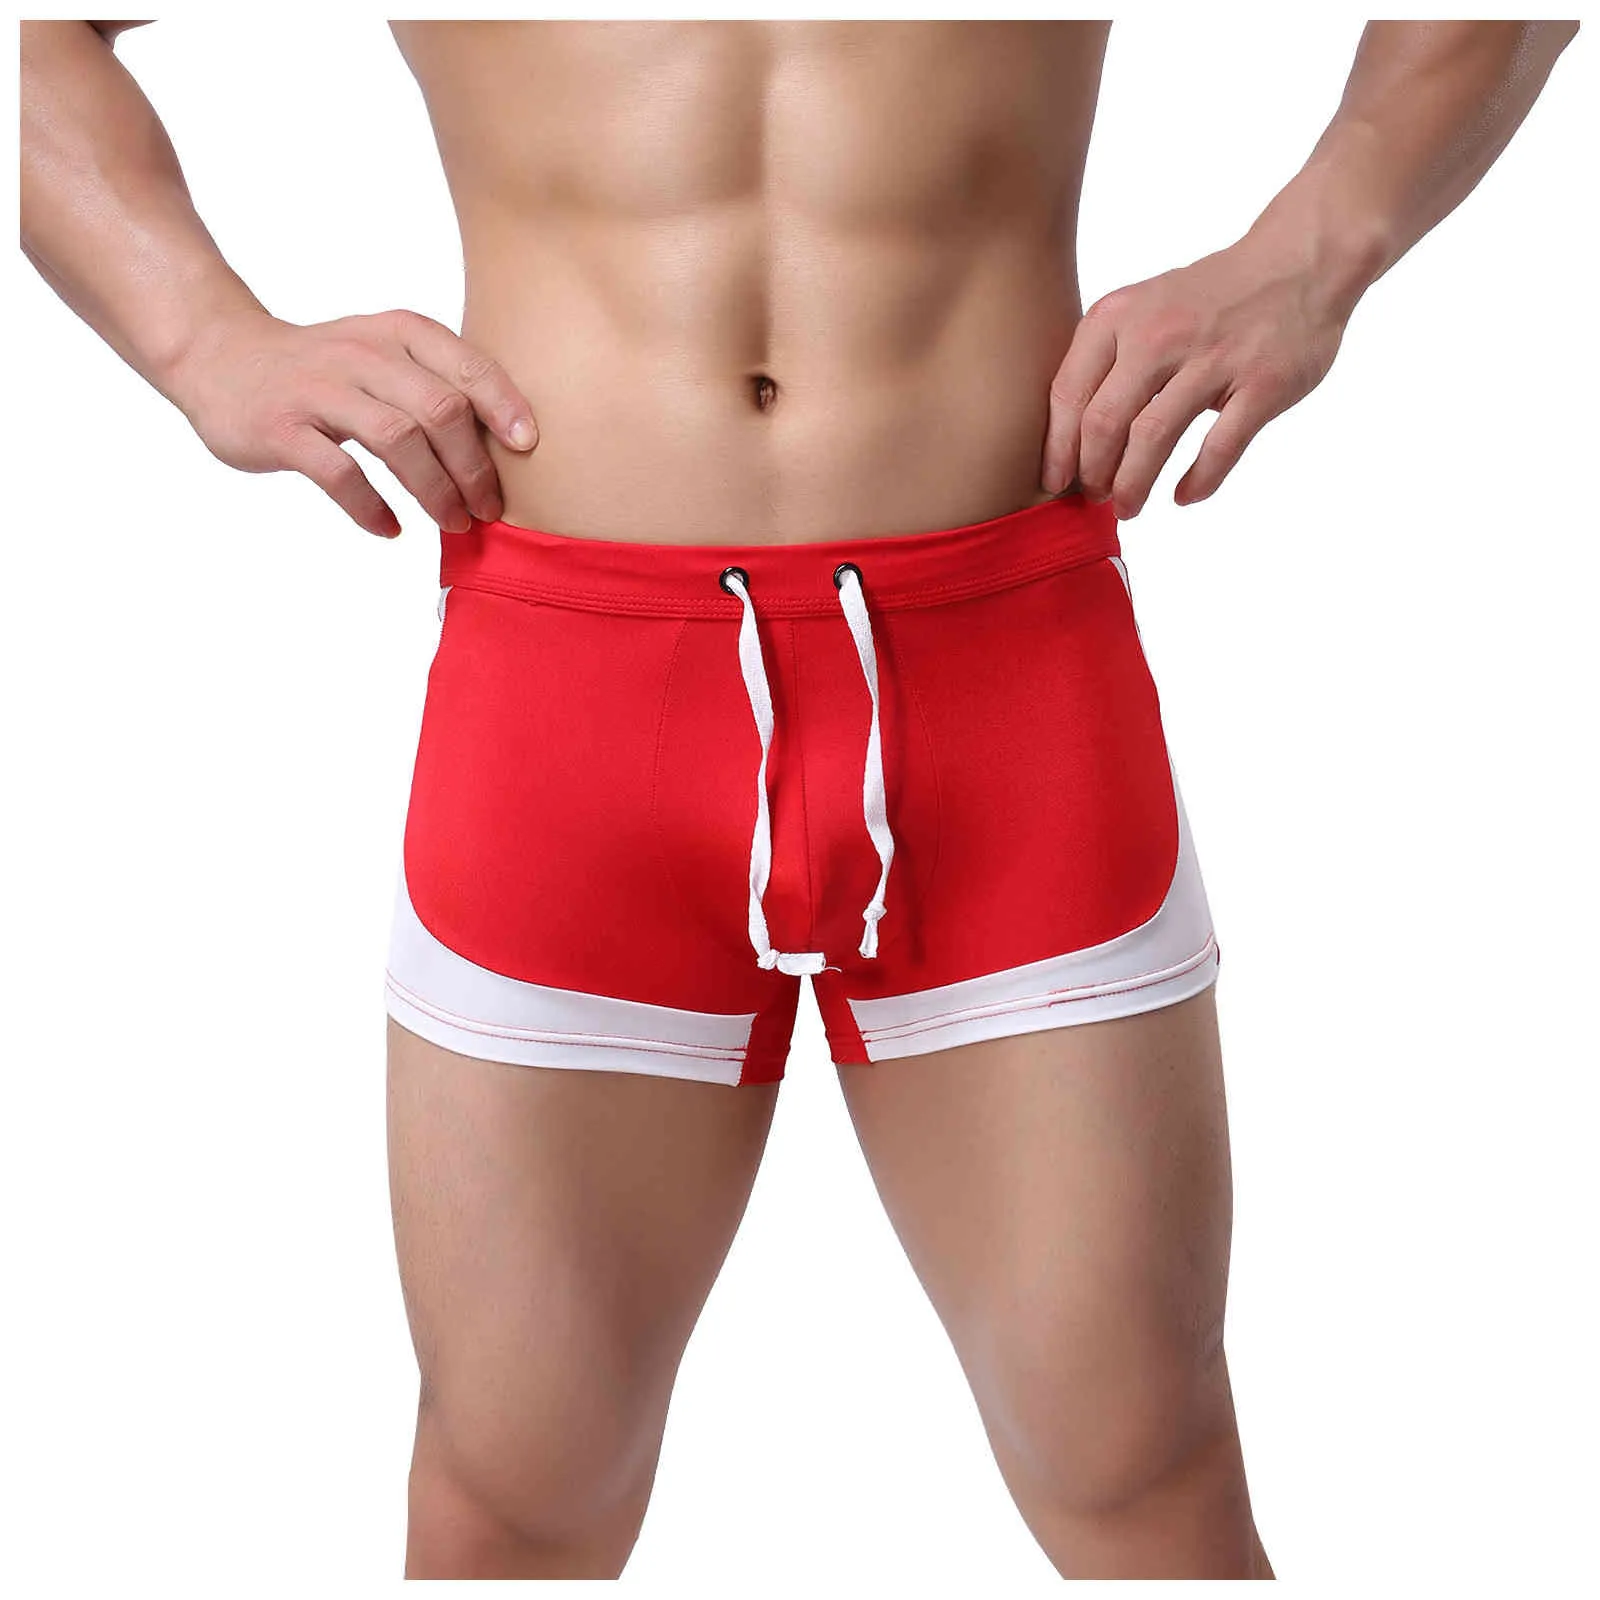 Luren 2021 Hot hommes sous-vêtements boxeurs Sexy Patchwork coton hommes Boxer sous-vêtements marque pas cher caleçons Boxer culottes X0316